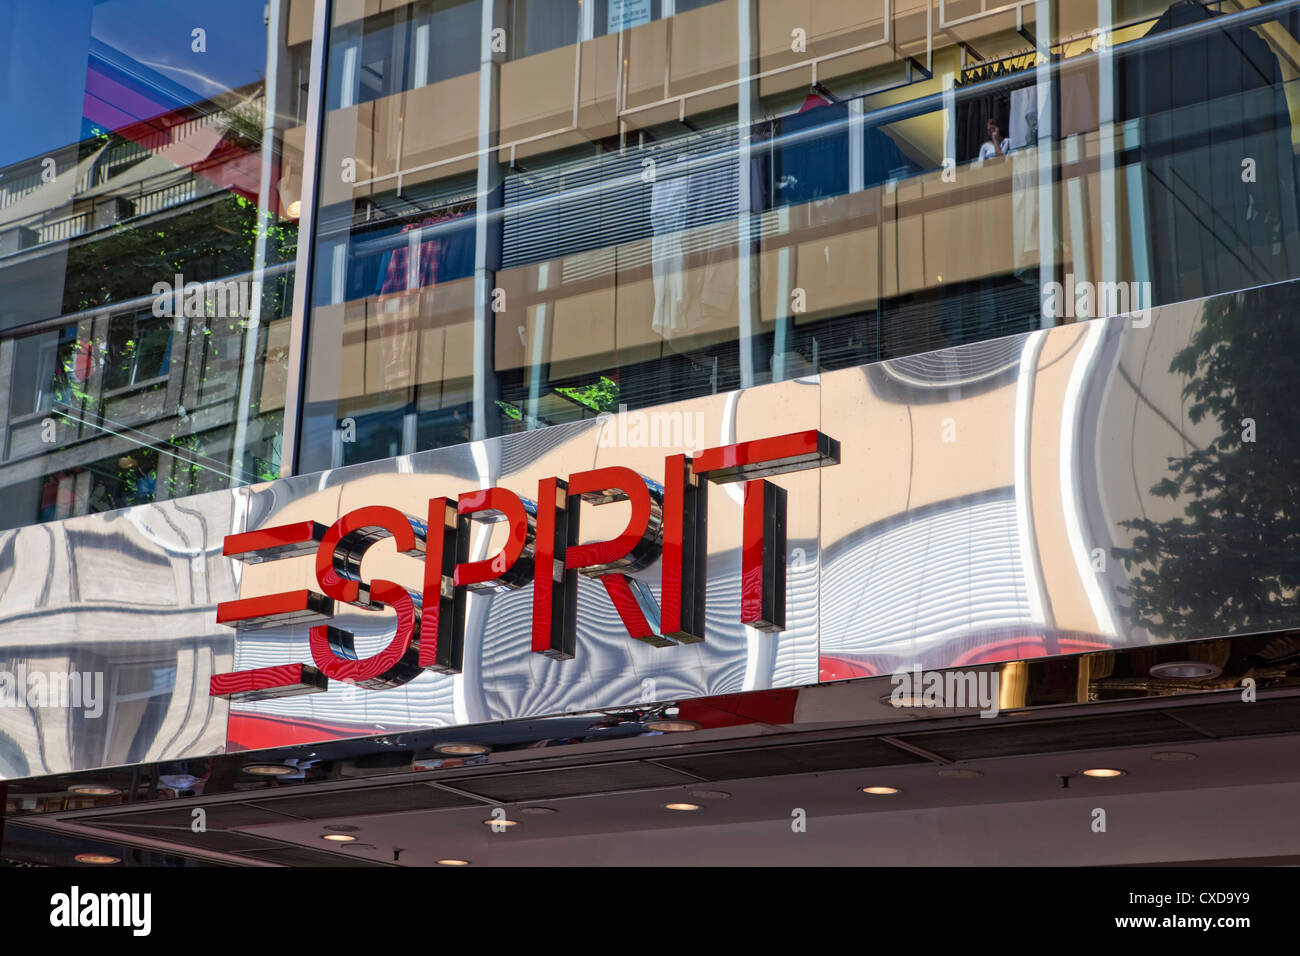 Rotulación, logotipo de la empresa Esprit, Colonia, Alemania Foto de stock